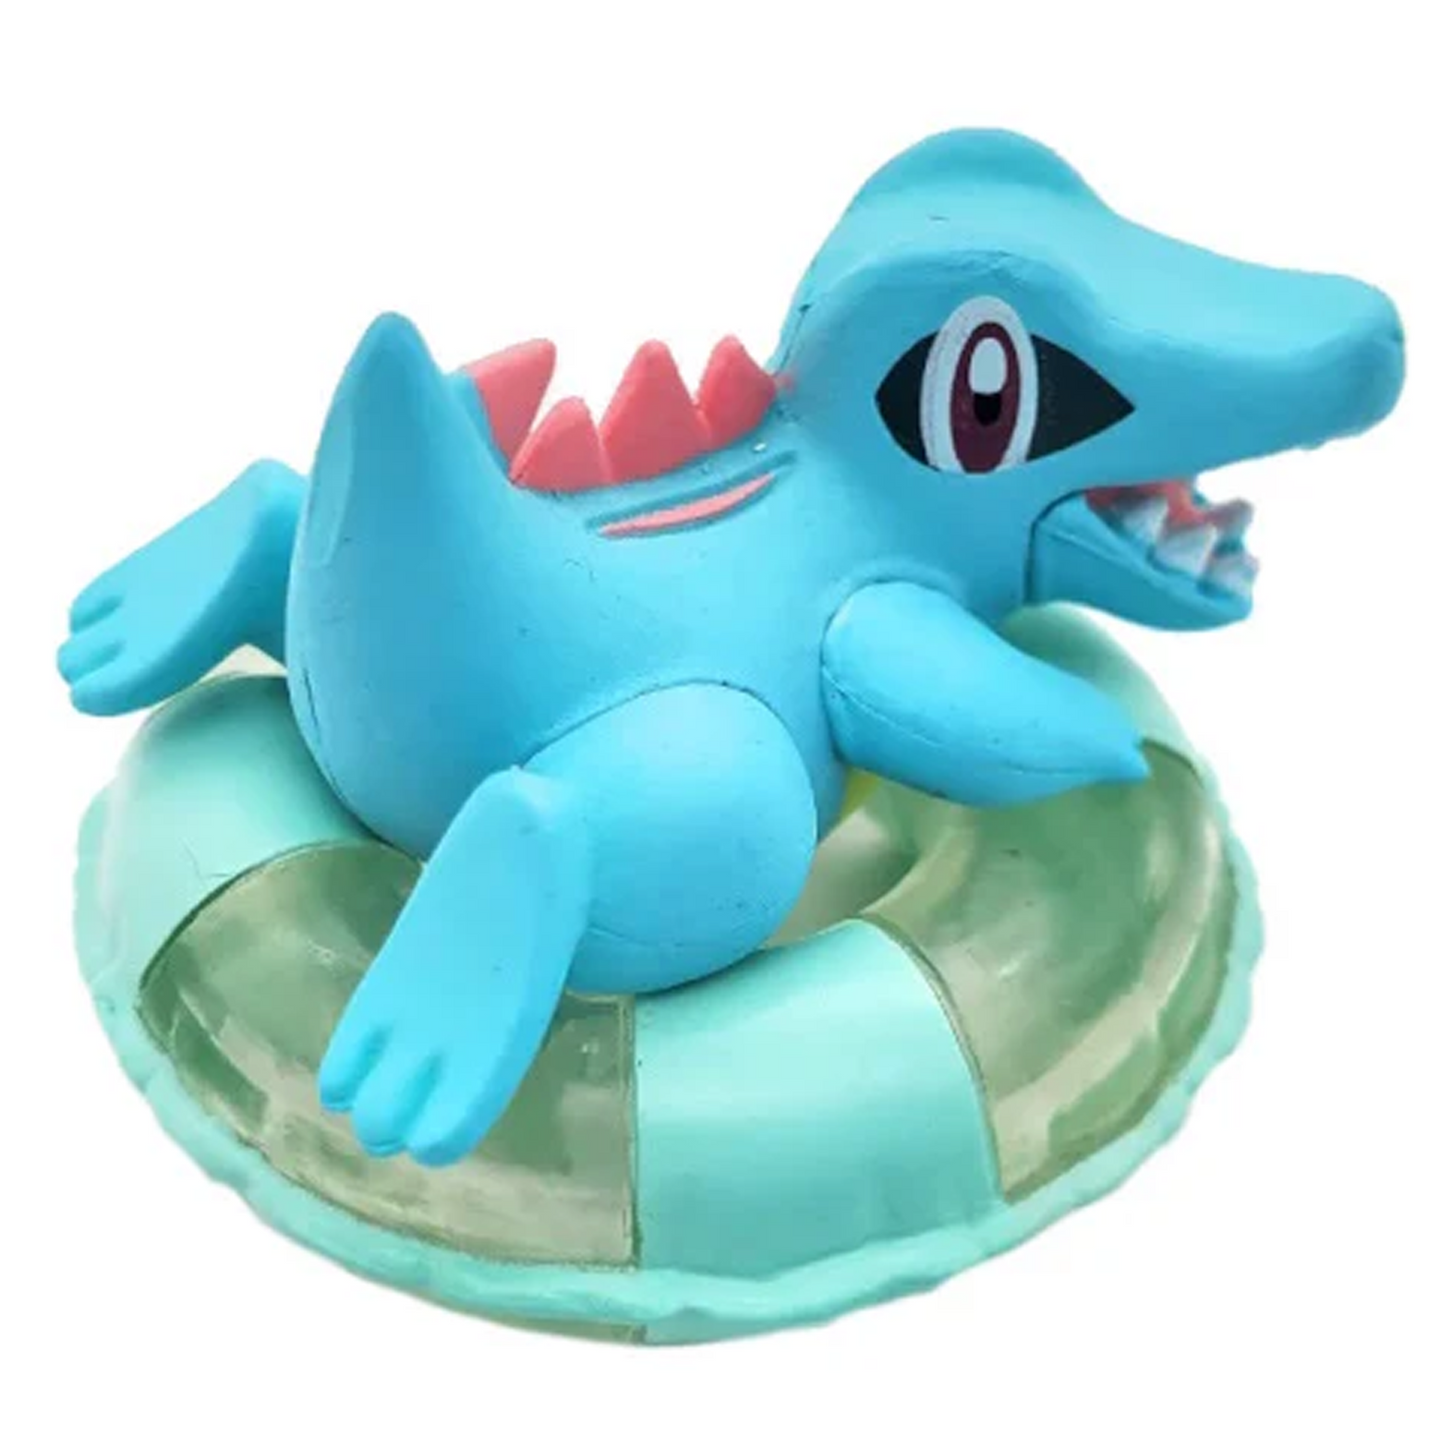 Pokémon Pastel Beach - Mini Figure Gachapon Capsule Toy (Totodile) | Happy Piranha